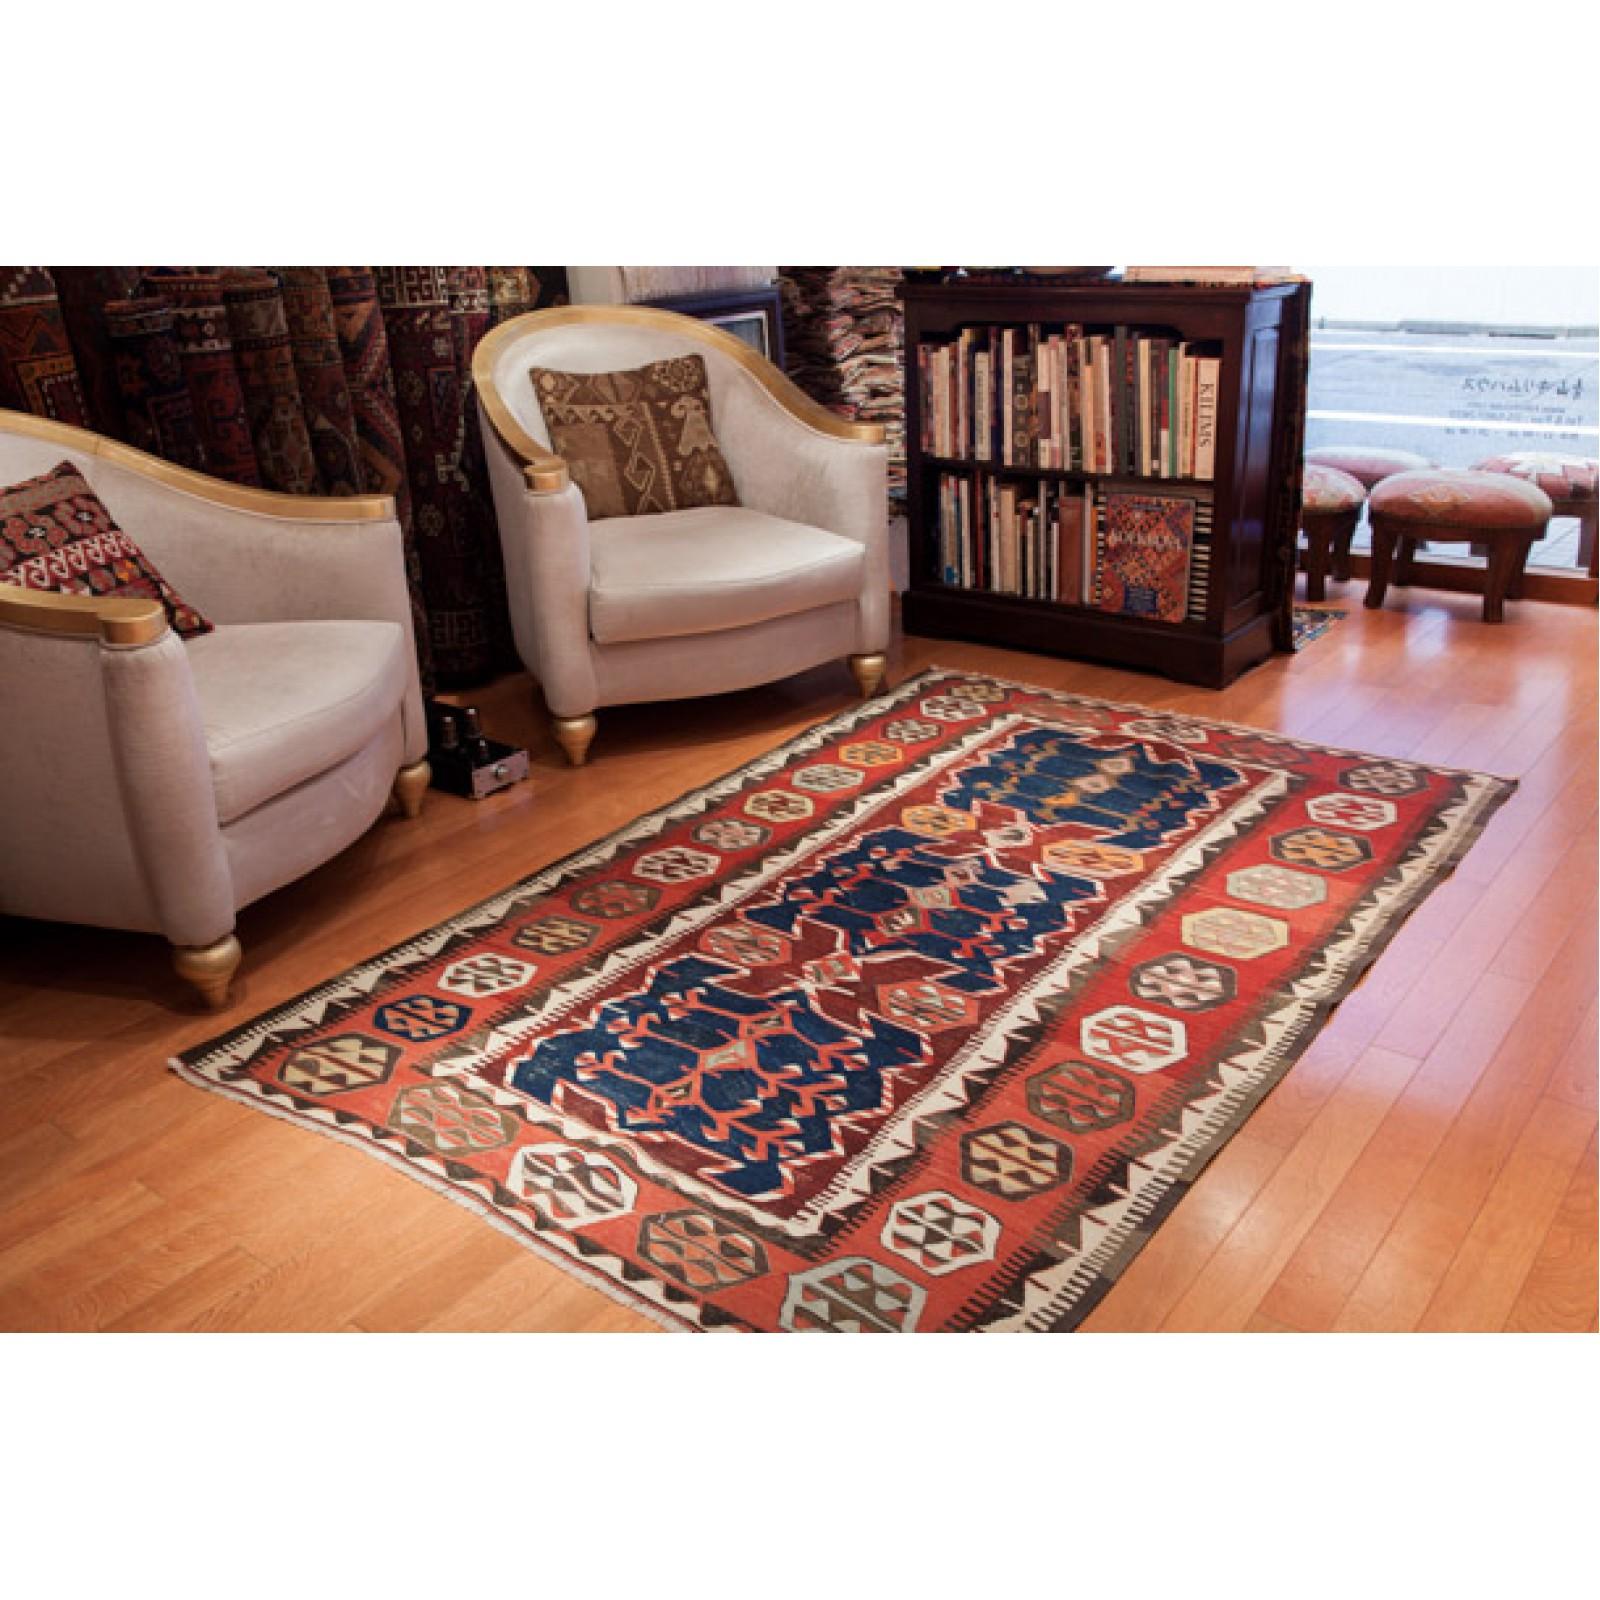 Wool Antique Konya Obruk Kilim Central Anatolian Rug Vintage Turkish Carpet For Sale